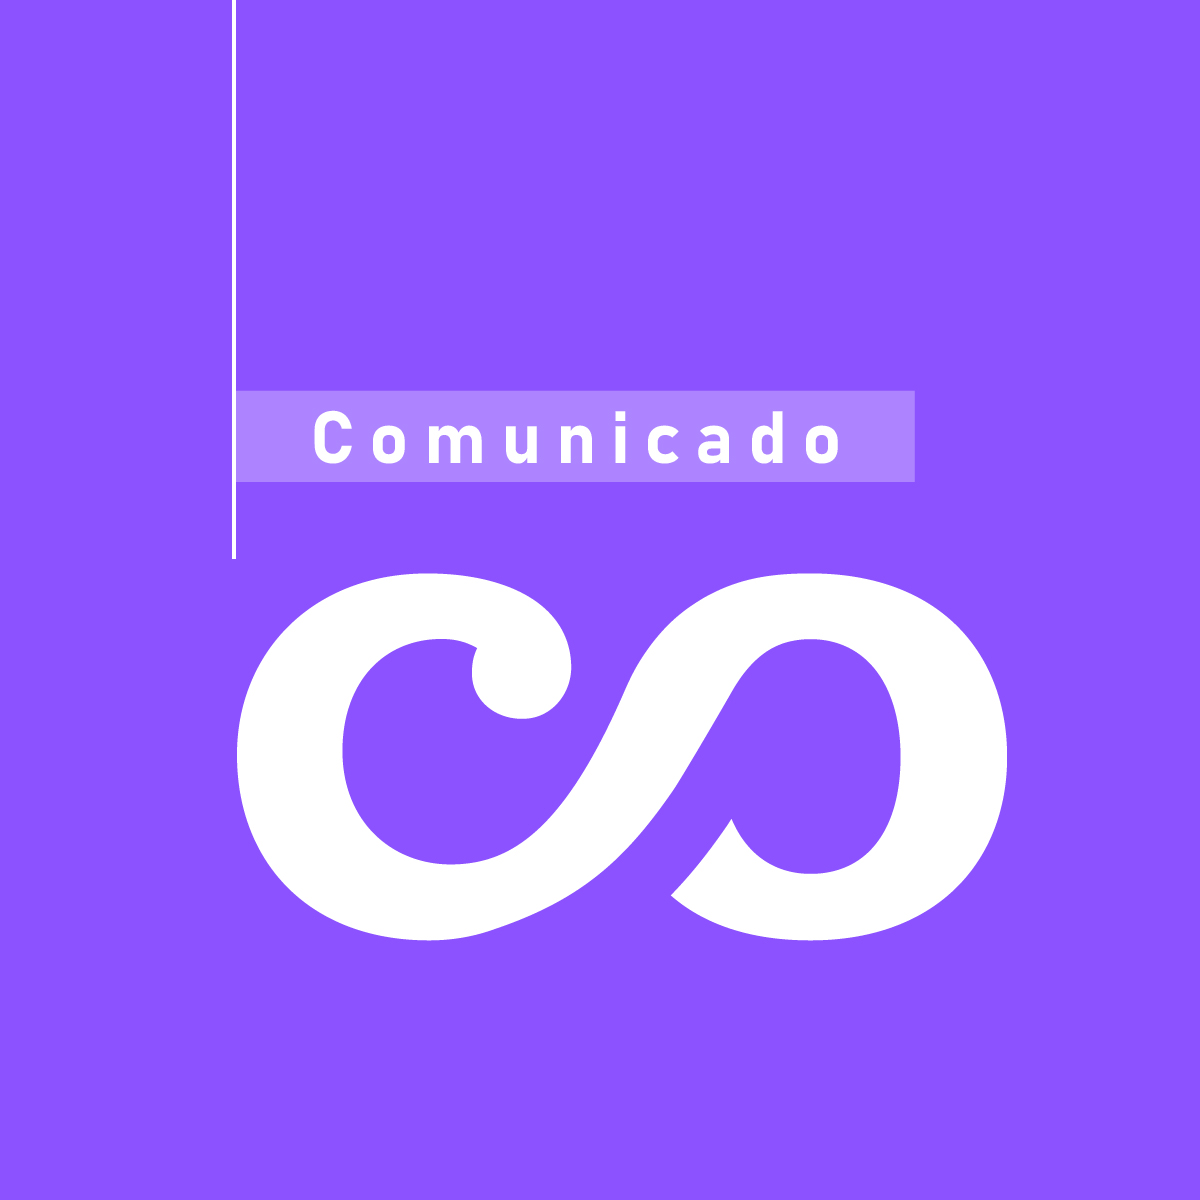 CasaMacondo es el primer medio latinoamericano con certificación de la Journalism Trust Initiative